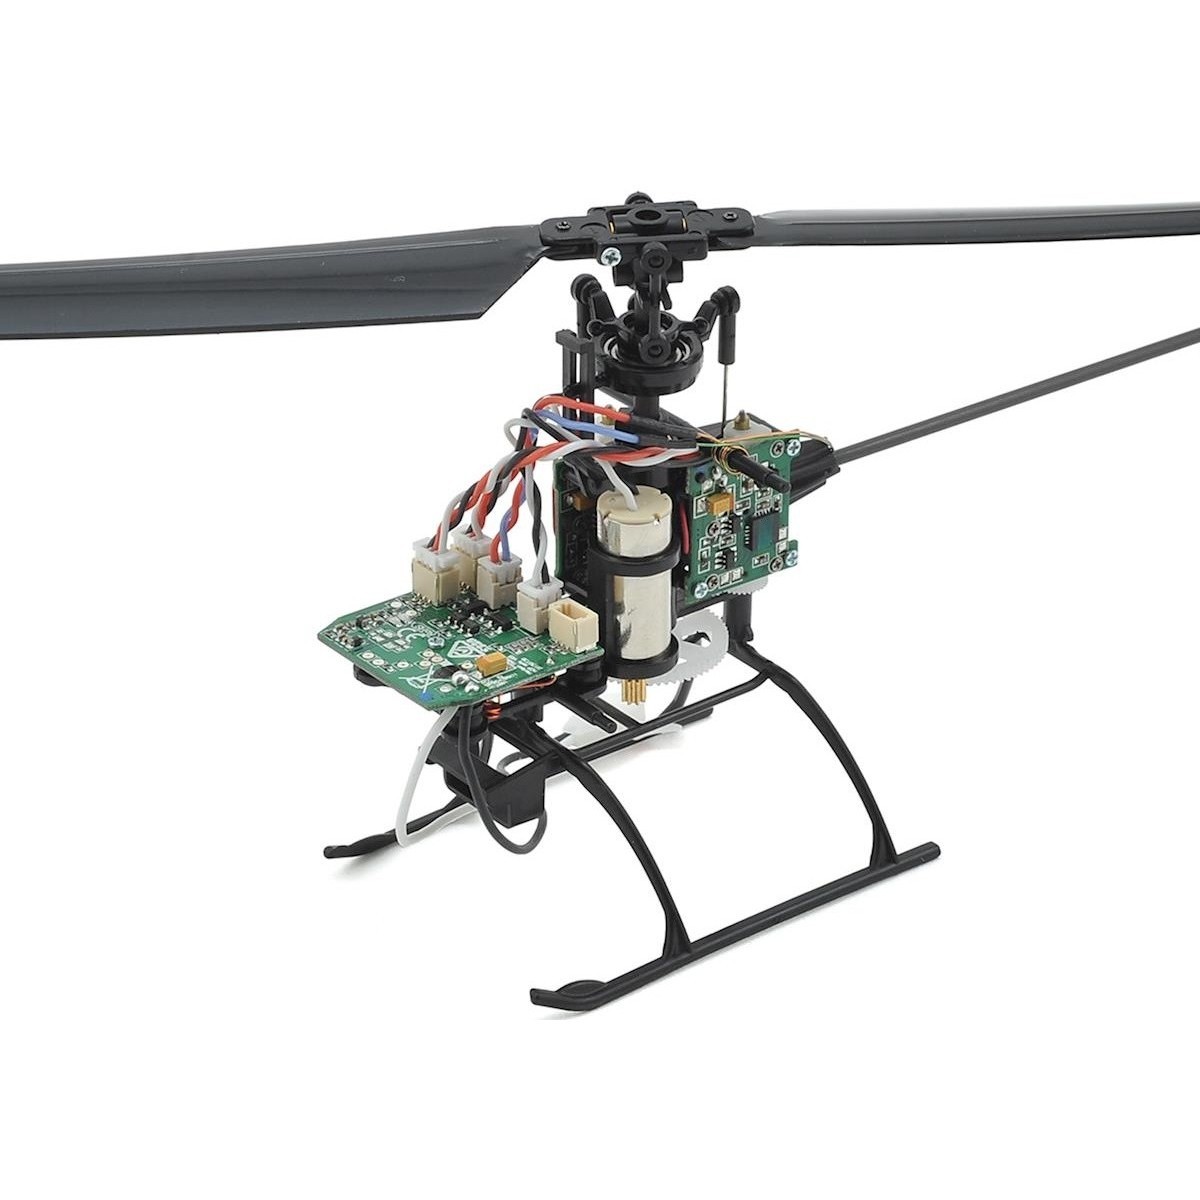 Профессиональное радиоуправление. Blade MSR S. Alloy Series Mera вертолет радиоуправляемый... (022804). 40см вертолет радиоуправляемый 27 МГЦ. Копийный вертолет uh-01 на радиоуправлении.